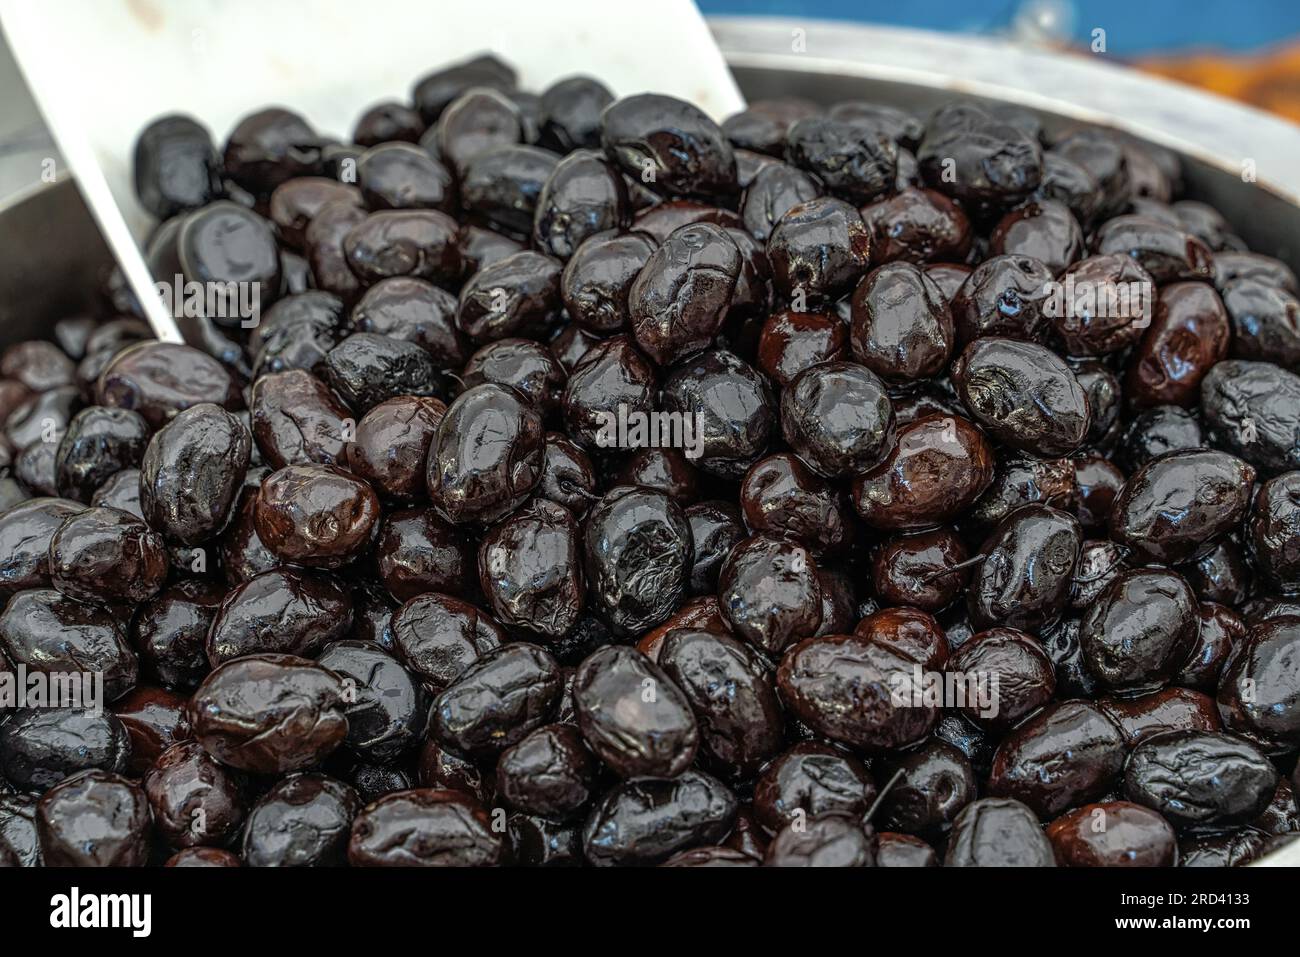 vendita di olive nere con spezie nella bancarella del mercato Foto Stock